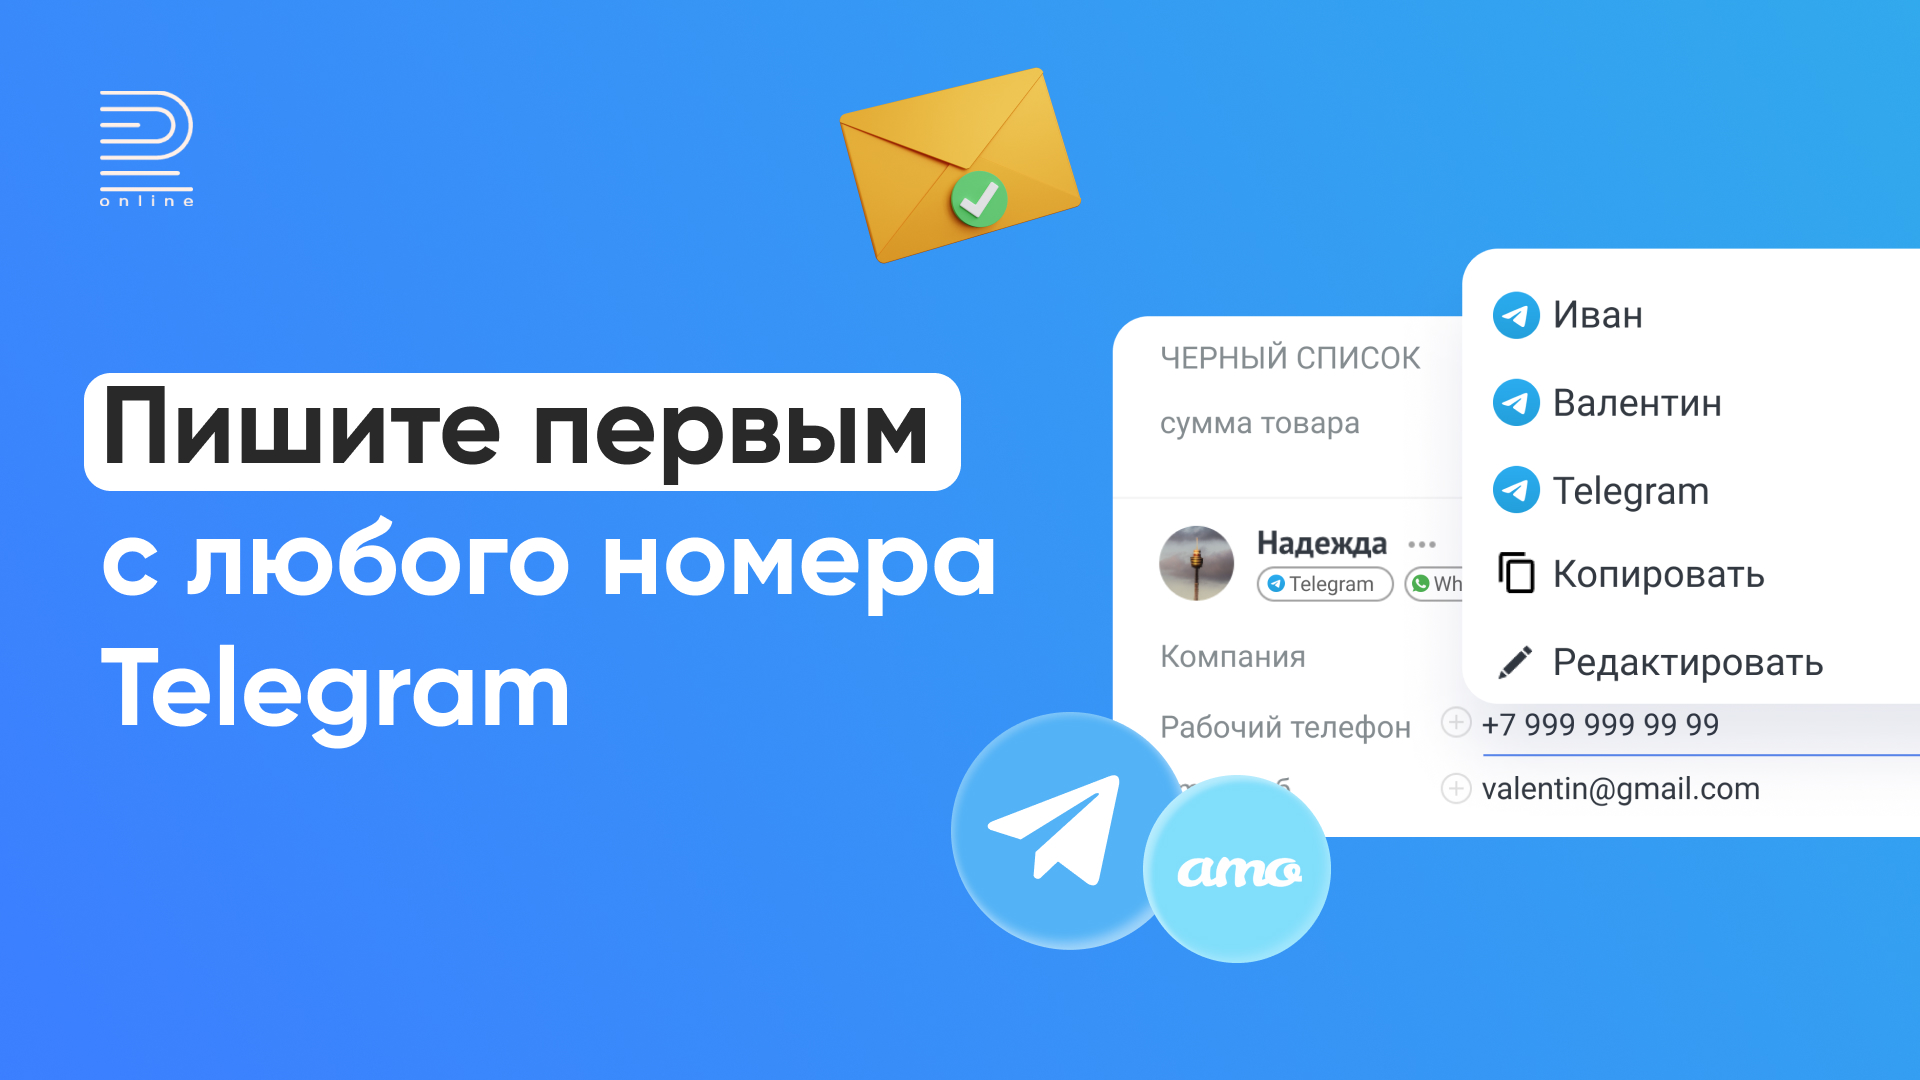 Как подключить телеграмм на андроид бесплатно на русском языке и установить фото 114